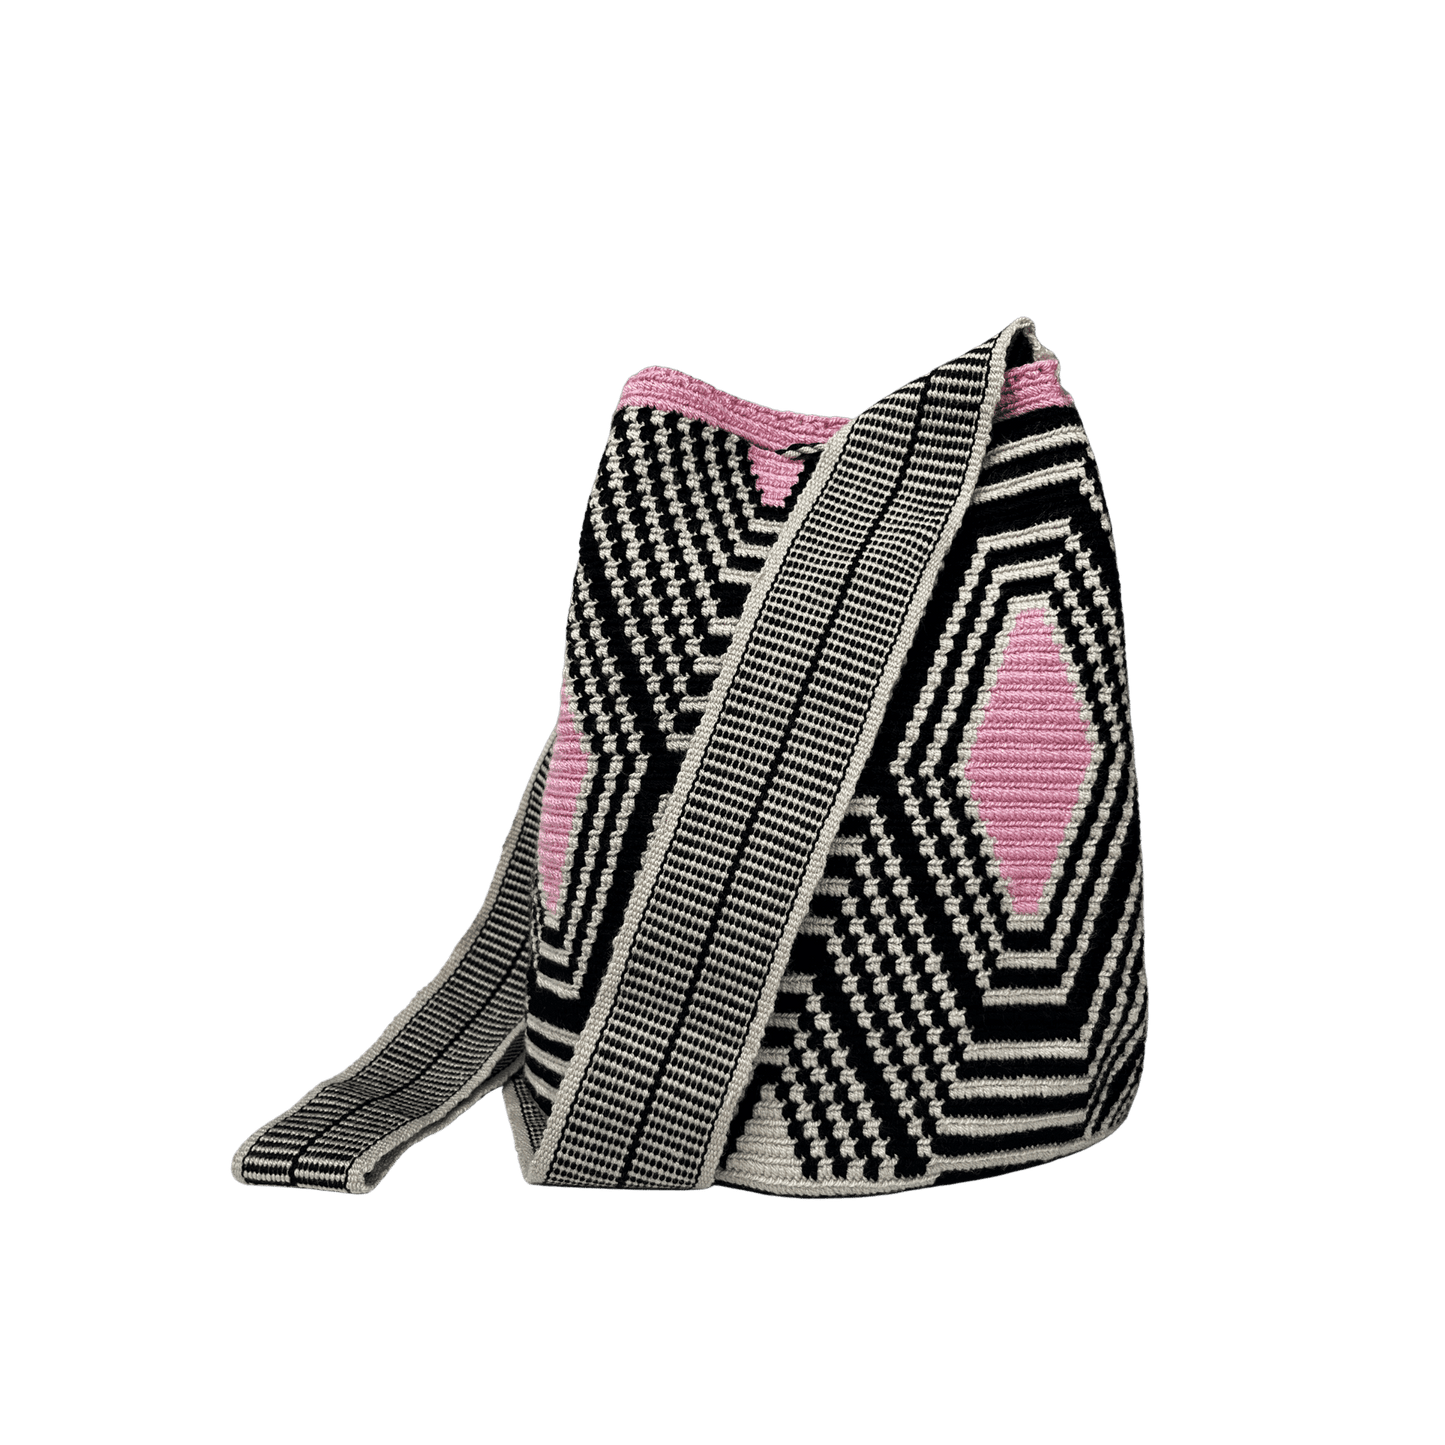 Mochila wayuu original tejida a una hebra en colores negro, beige y rosado. Gaza paleteada